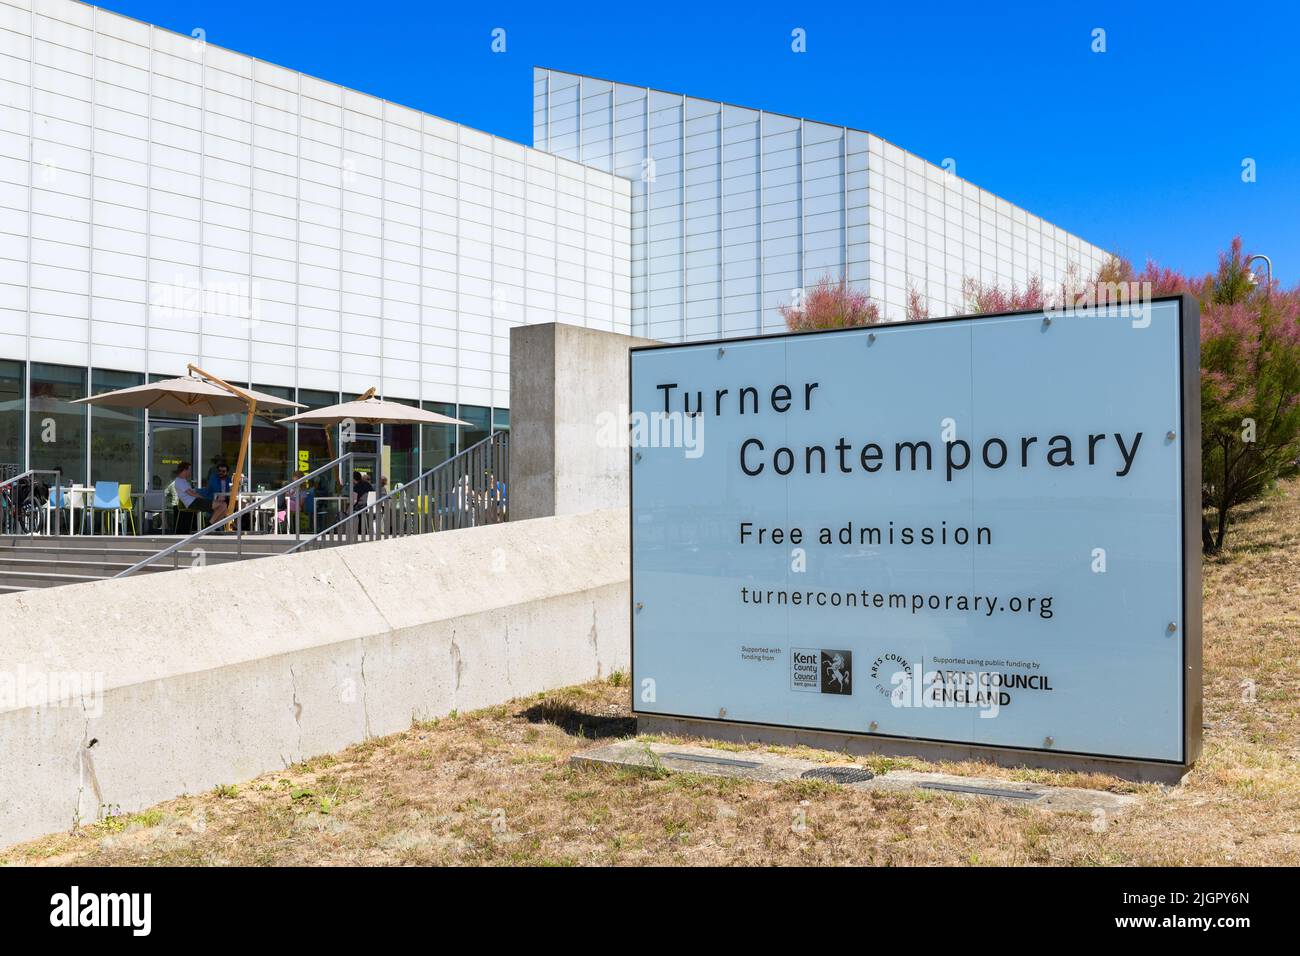 Turner signe d'entrée gratuite contemporain, Margate, Kent, Angleterre, Royaume-Uni Banque D'Images